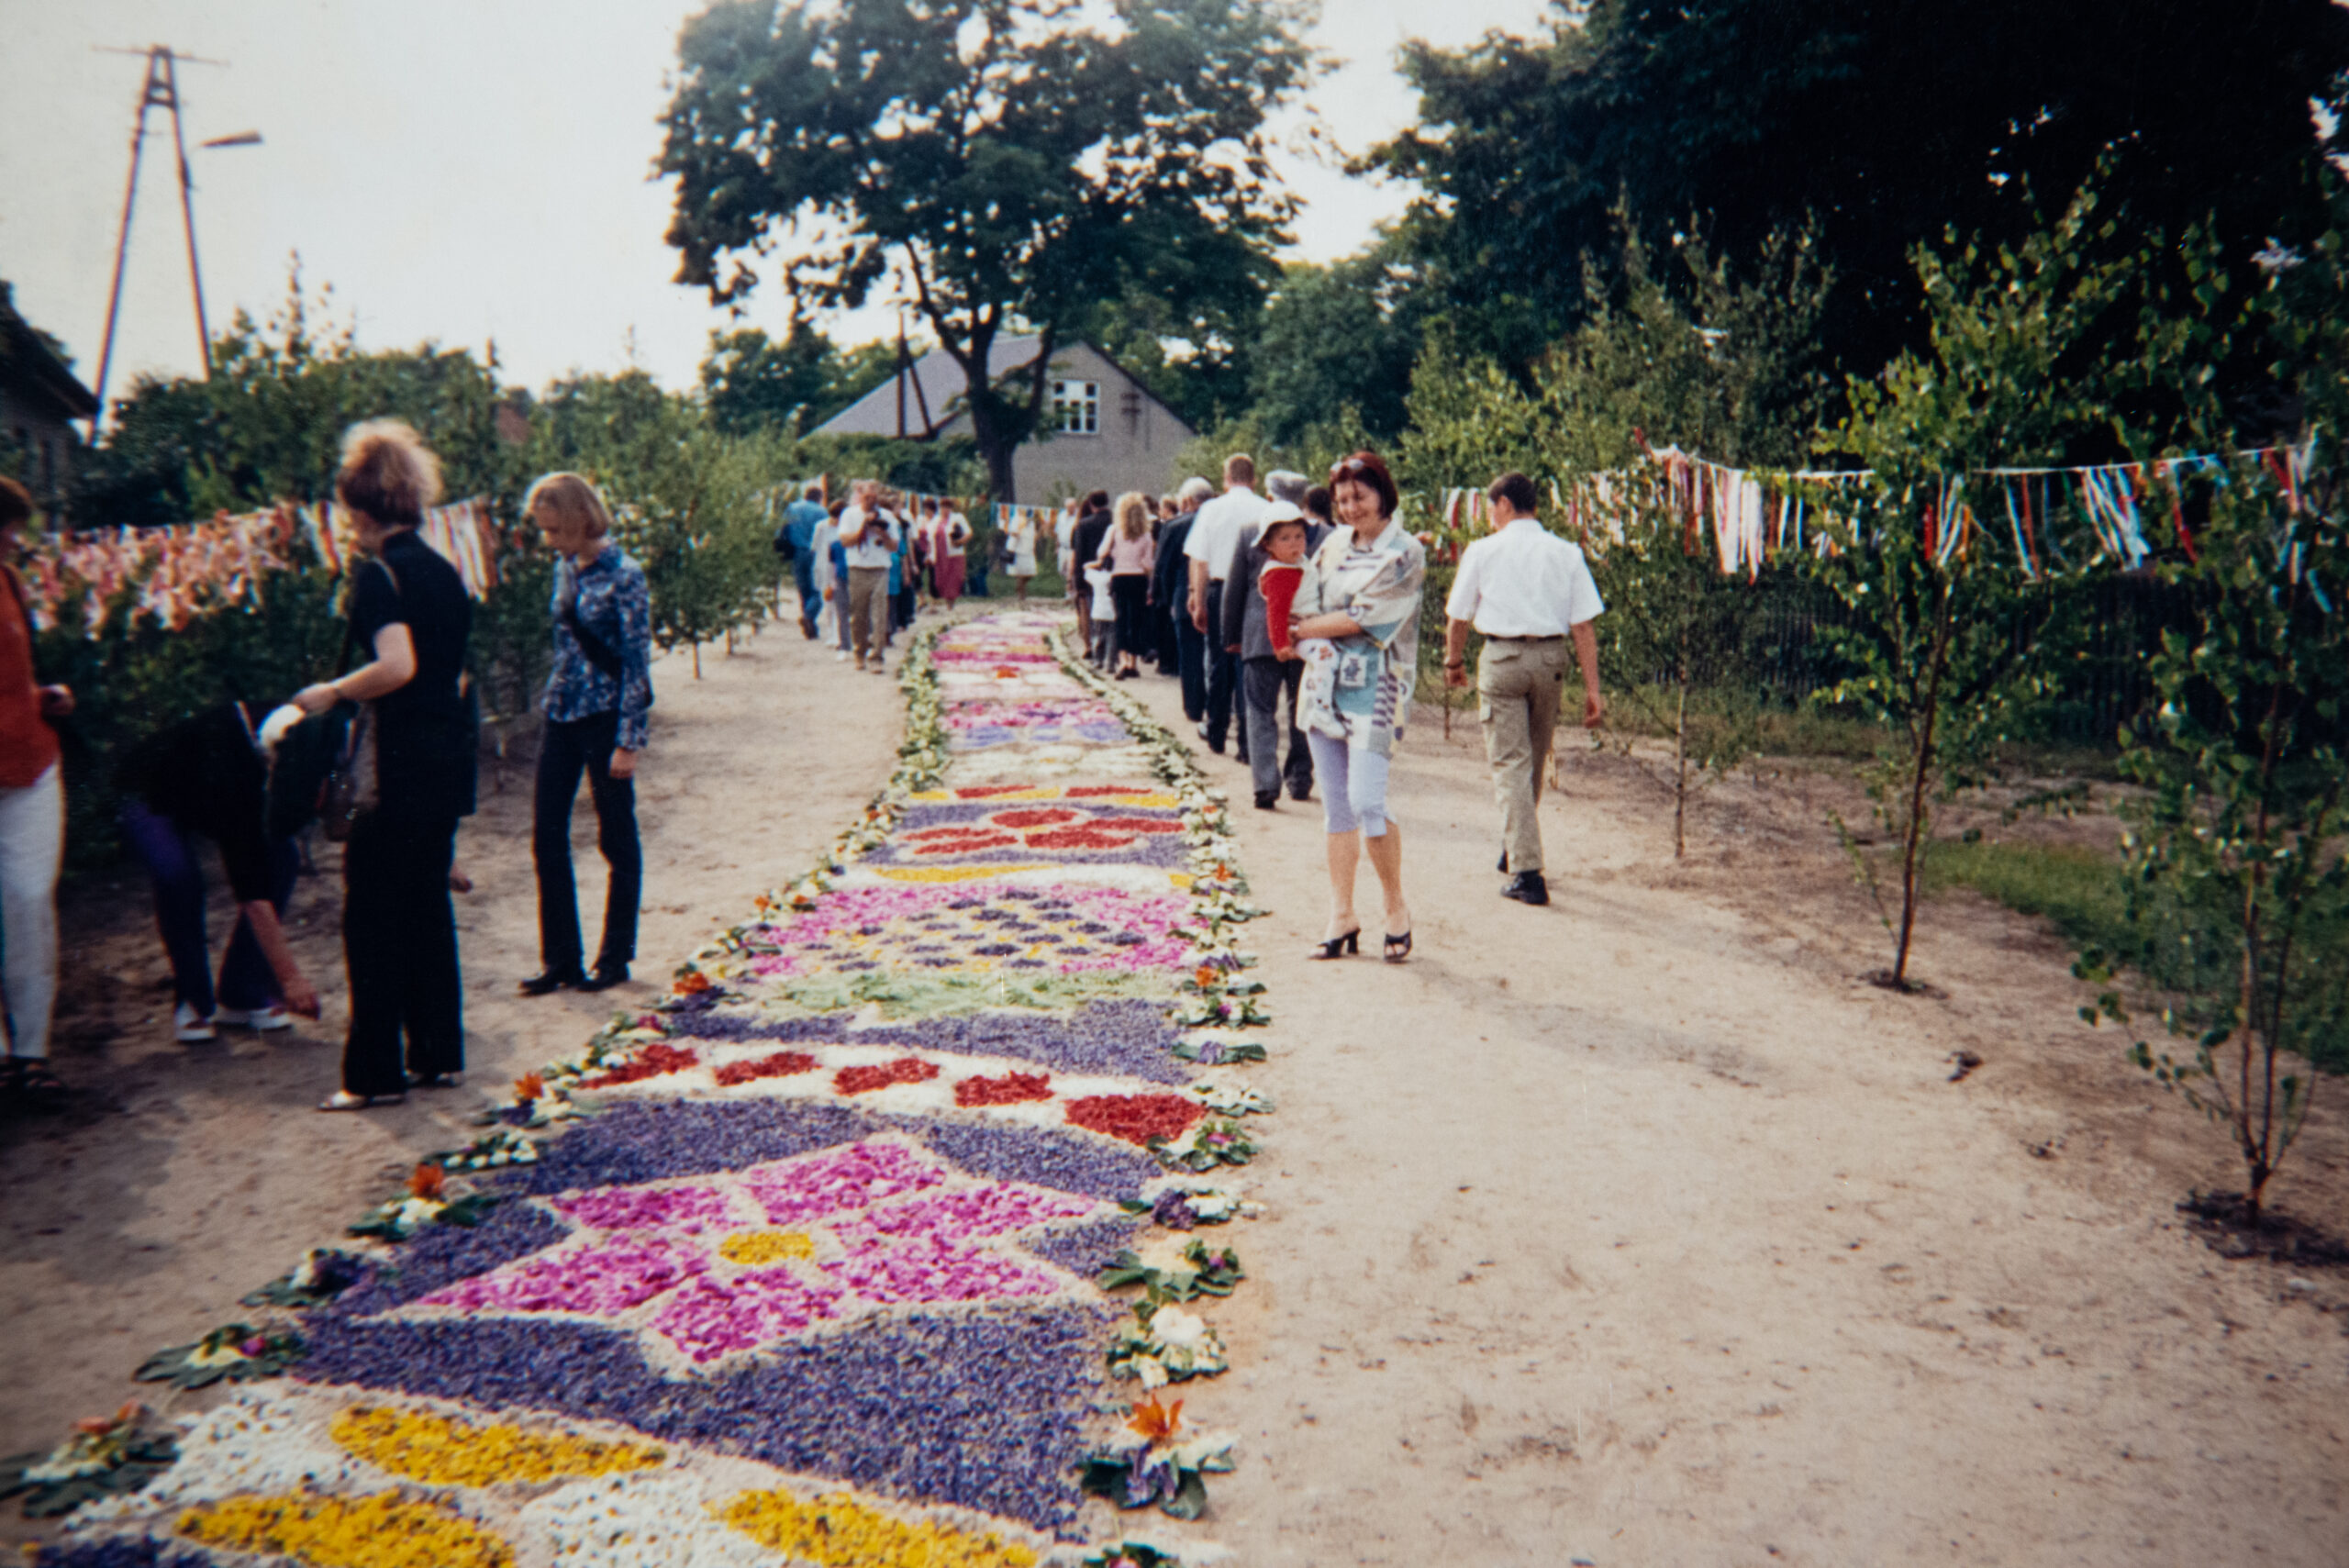 zdjęcie przedstawia dzień obchodów Bożego Ciała. Usypany dywan kwiatowy z wielokolorowych płatków oraz oglądający ludzie po bokach.